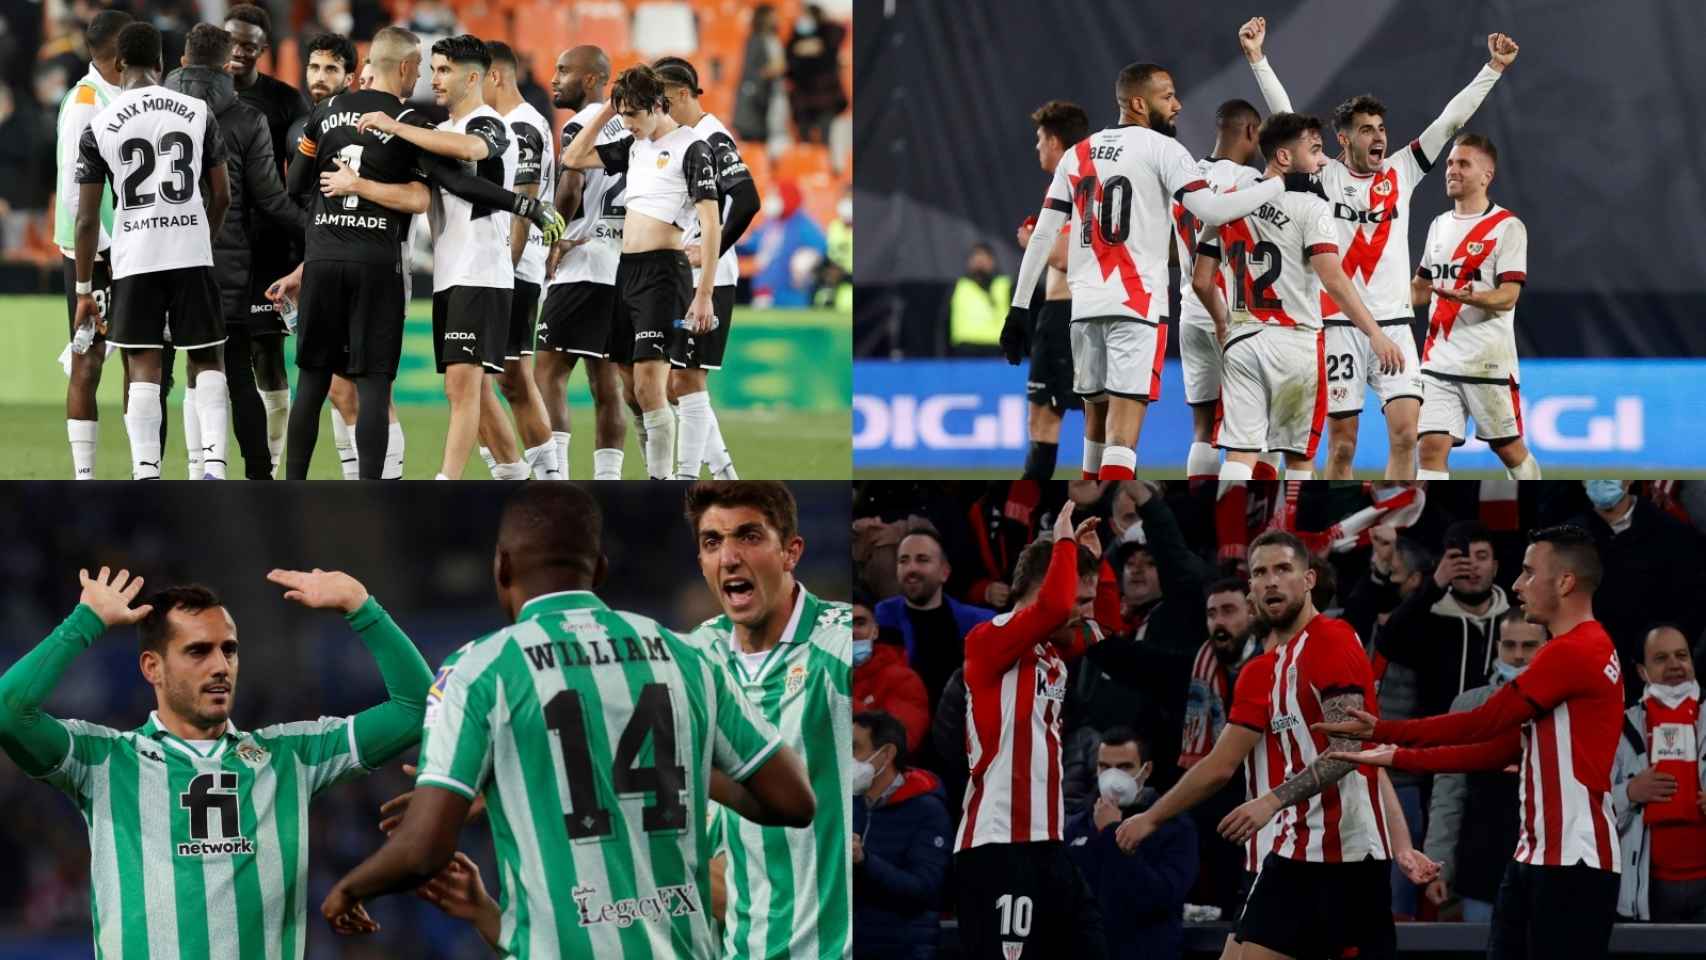 Los jugadores de Valencia CF, Rayo Vallecano, Real Betis y Athletic Club celebran el pase a las semifinales de la Copa del Rey, en un fotomontaje